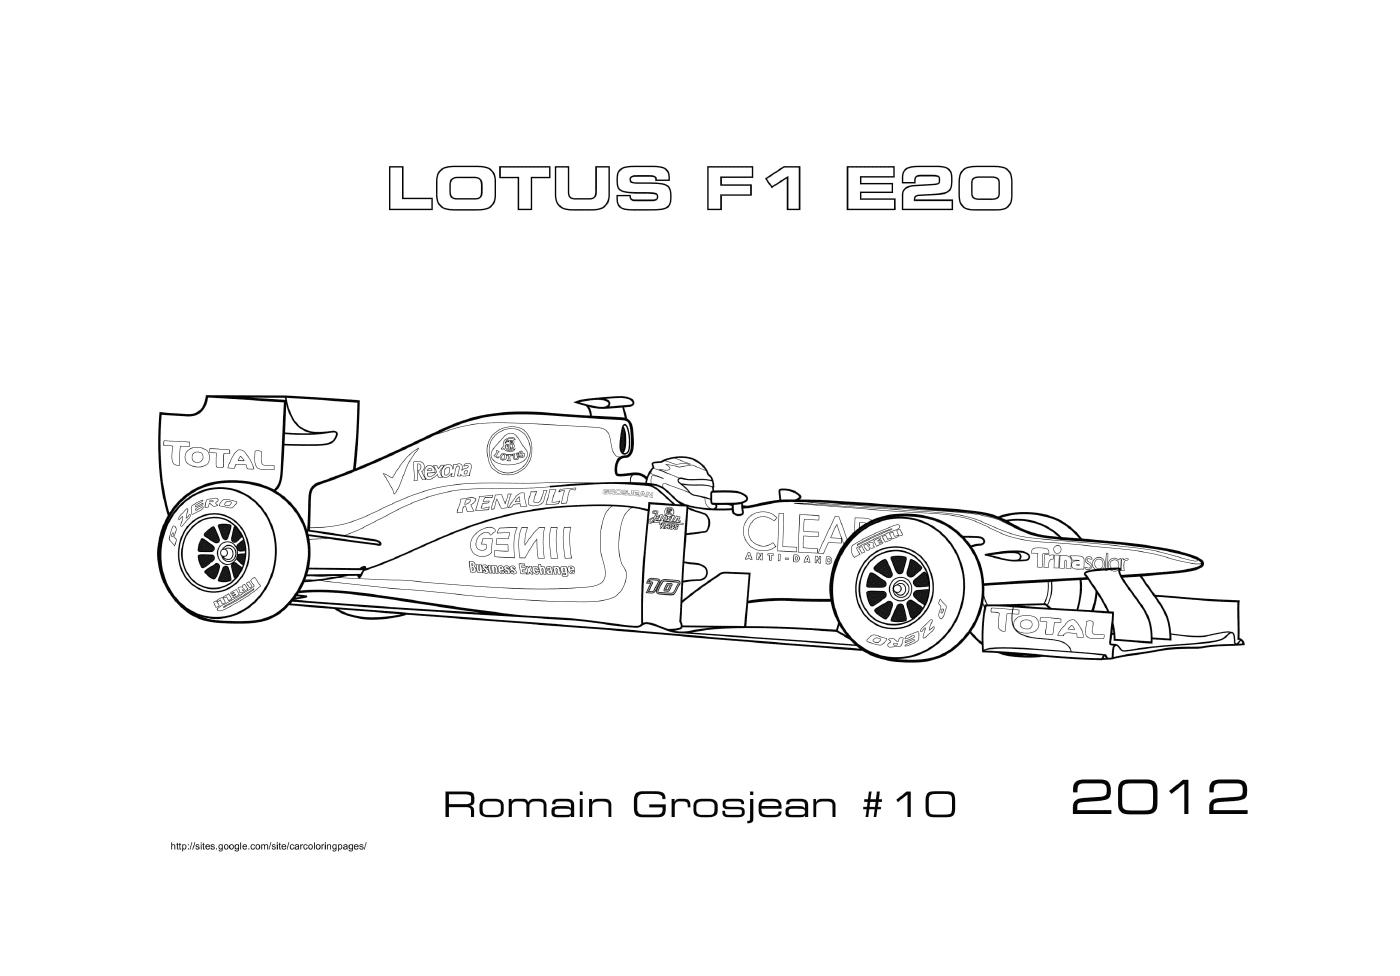  Гоночный автомобиль < < Лотус Е20 > > из Роман-Гросжана 